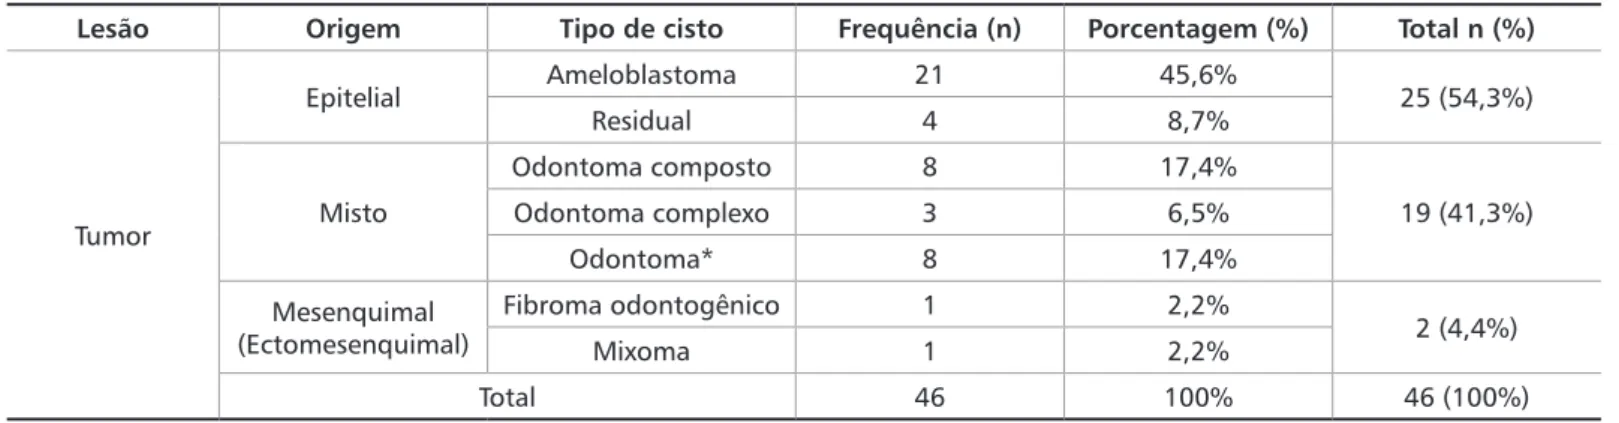 Tabela 3. Distribuição dos subtipos de tumores odontogênicos encontrados de acordo com a origem